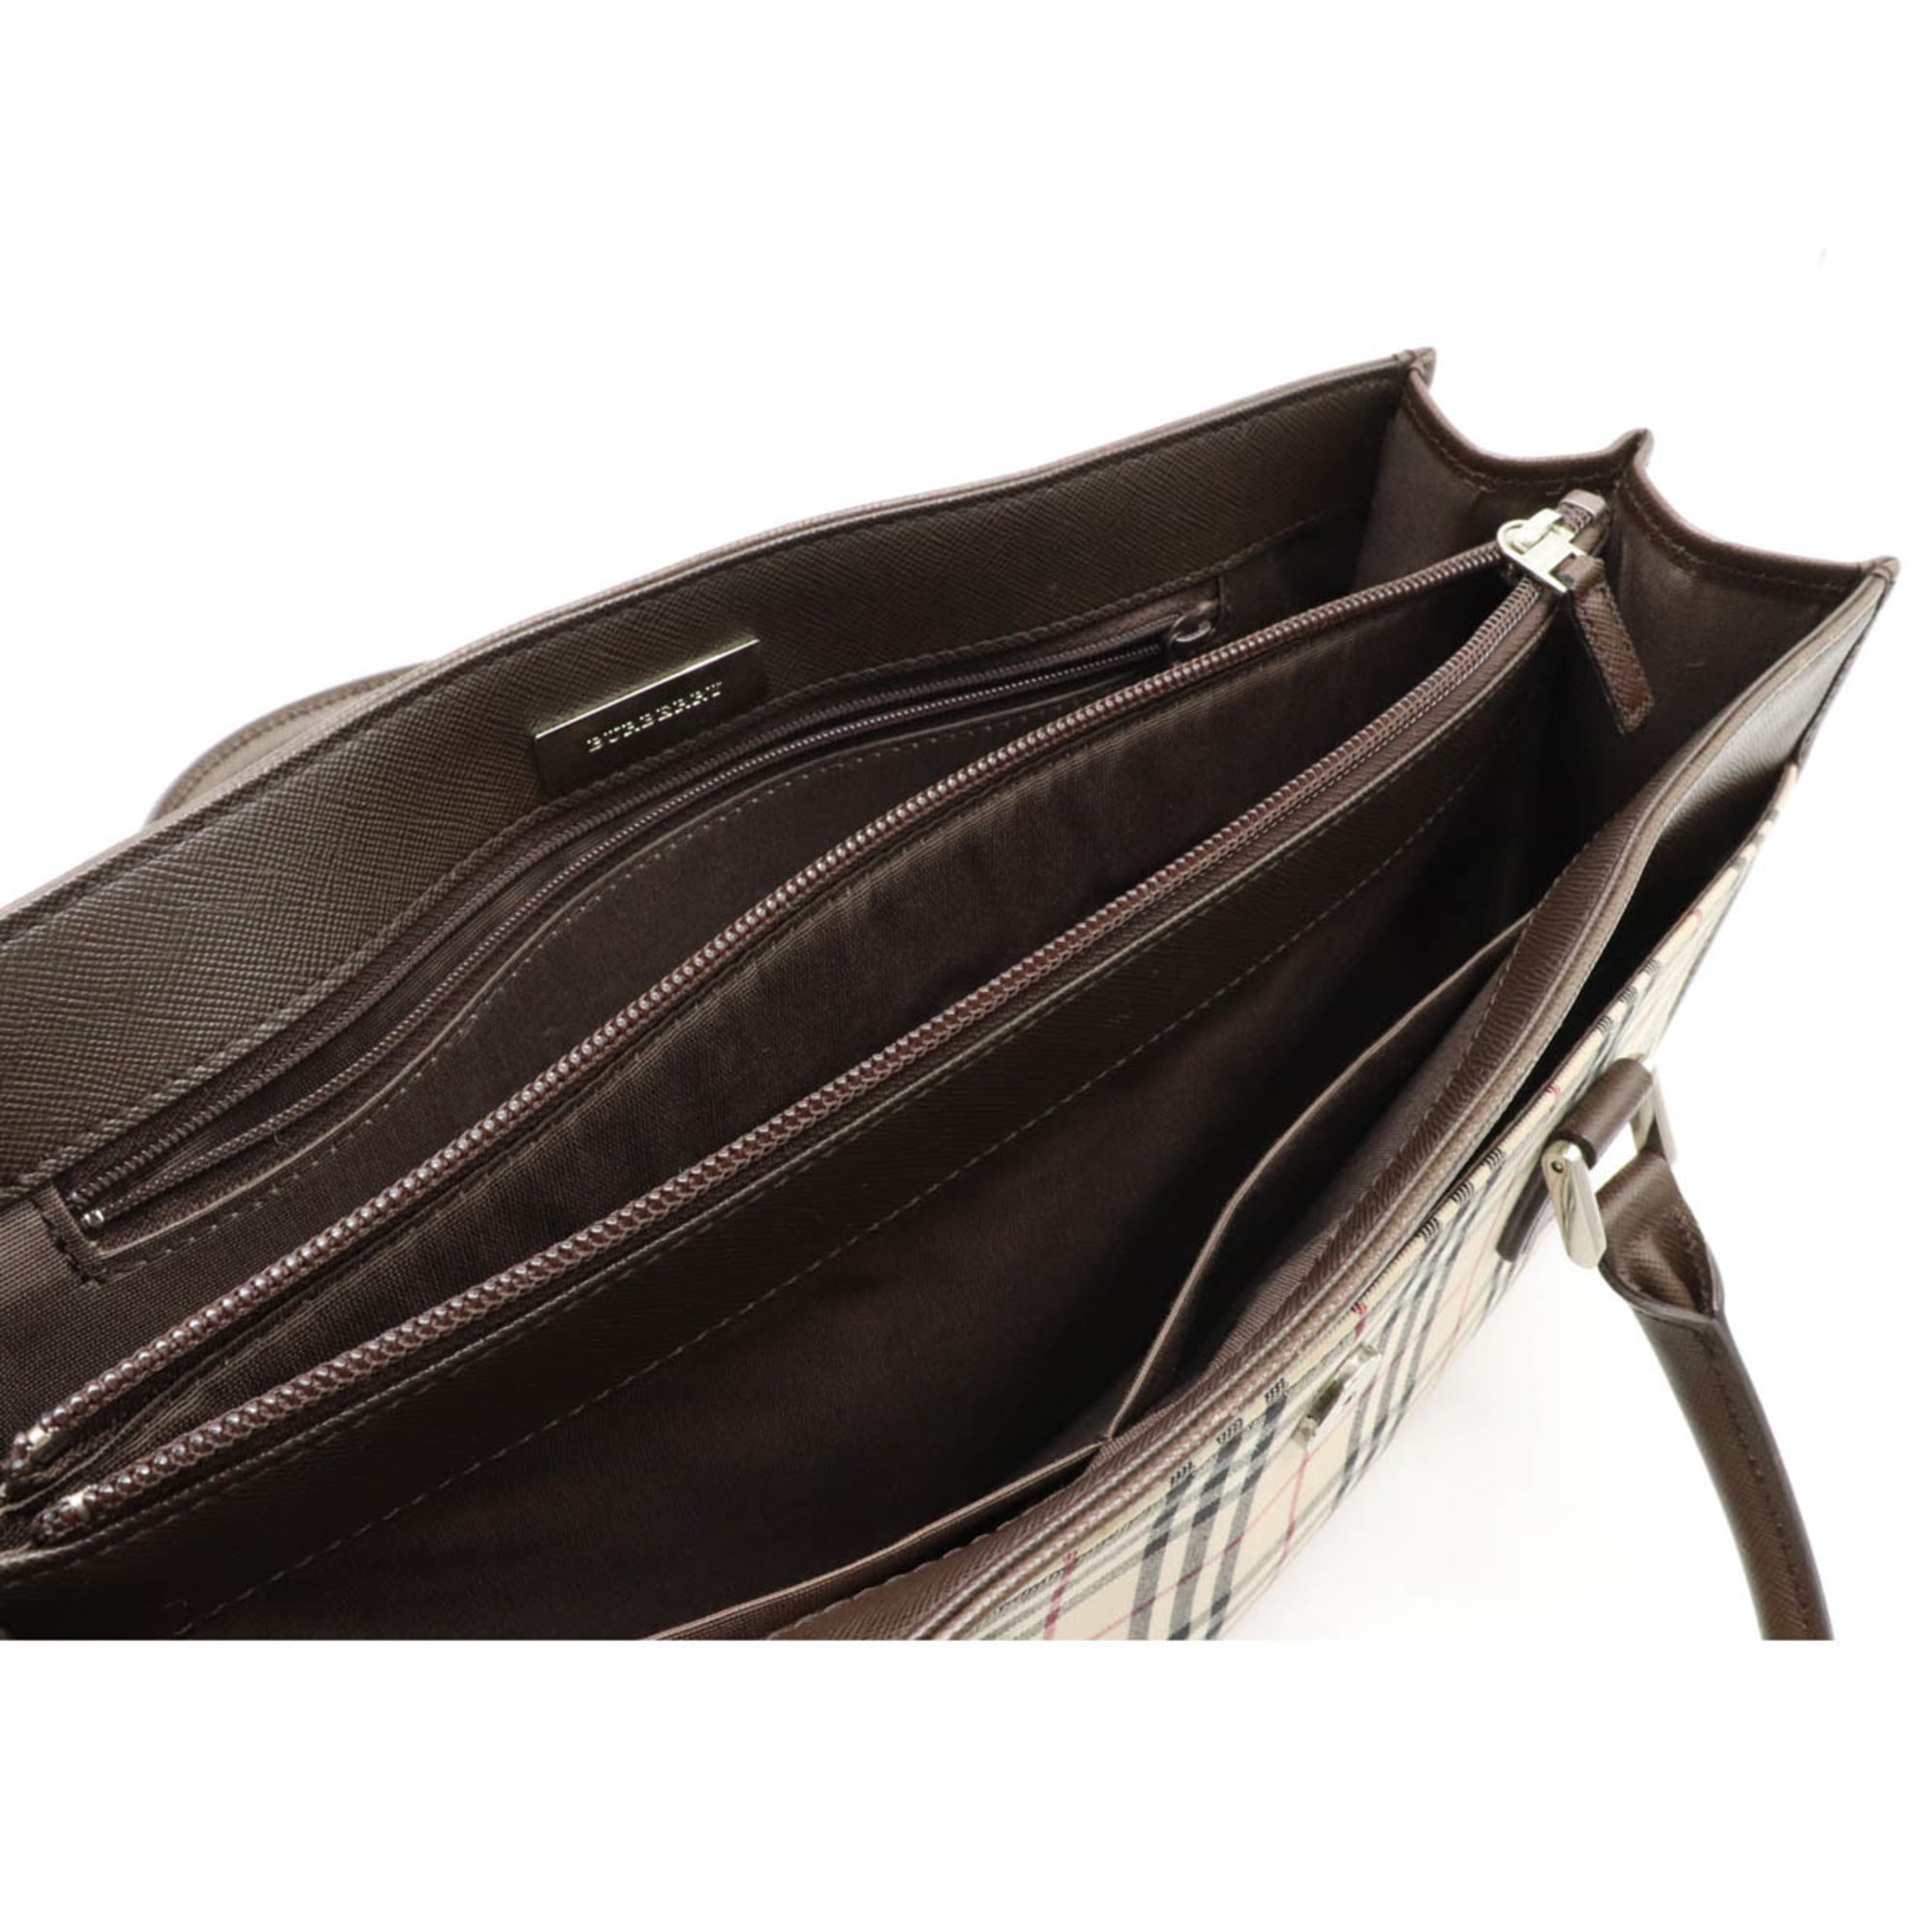 Burberry London Coated Canvas Nova Check Handle Bag - Neutrals Handle Bags,  Handbags - WBURL146798